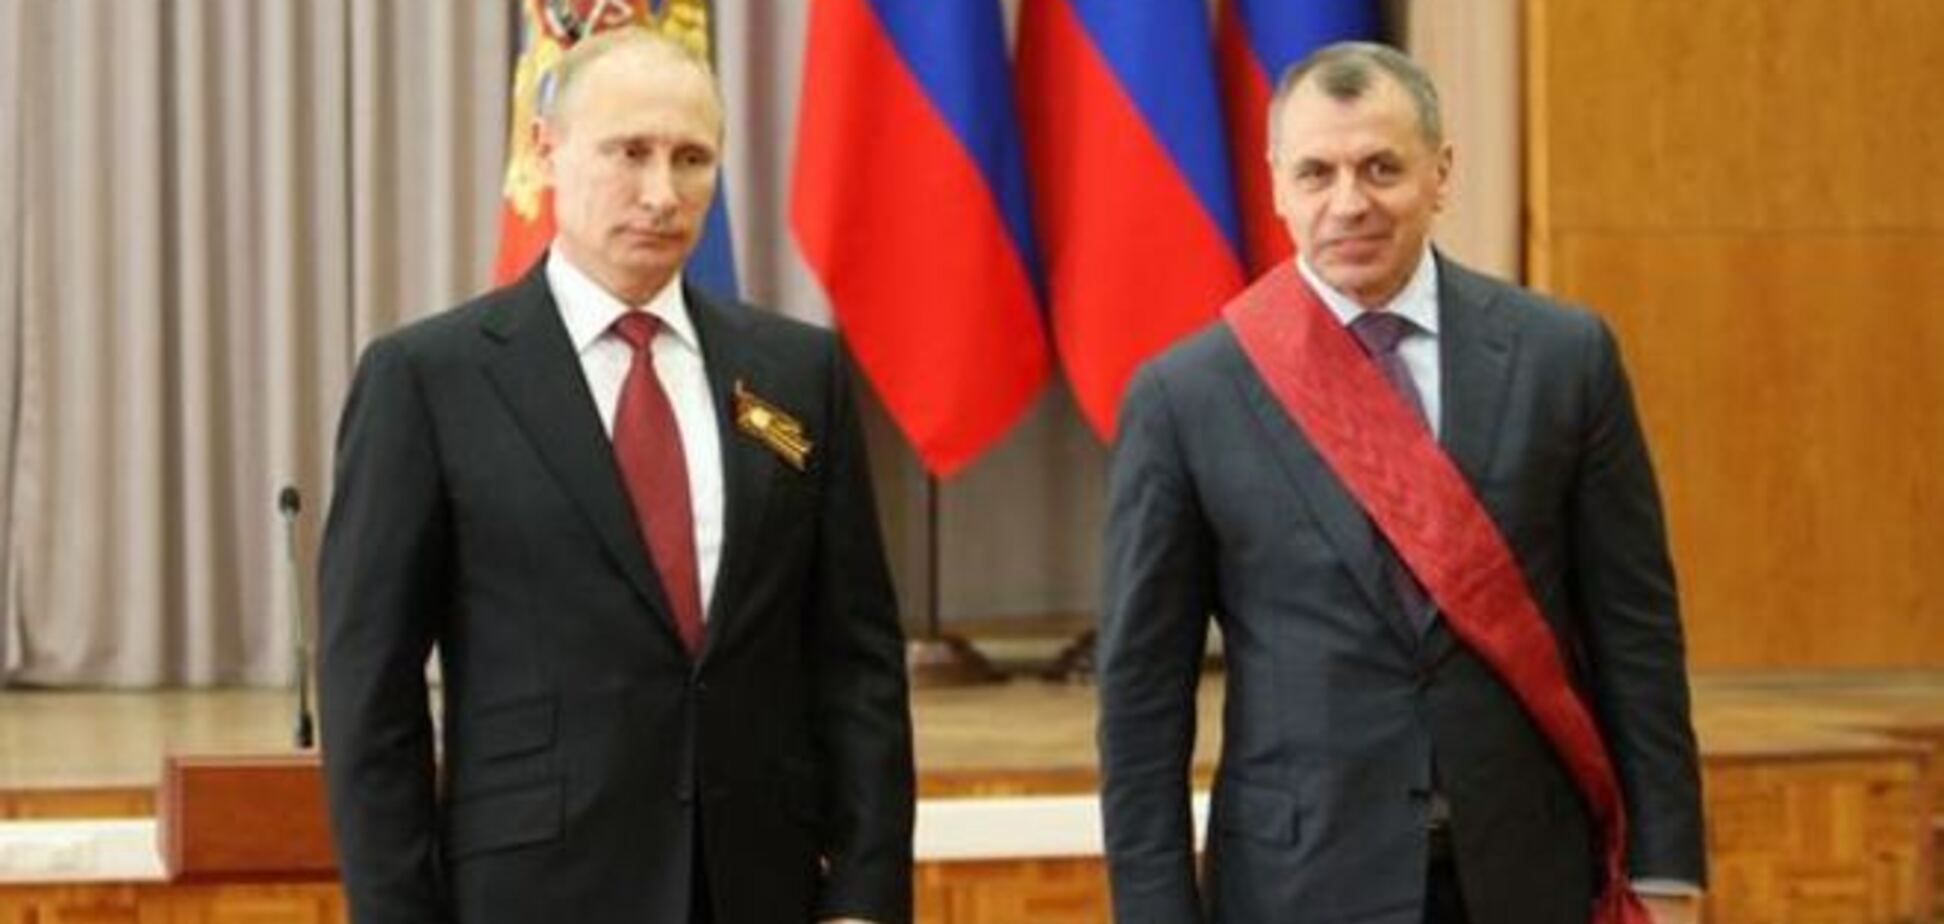 Путин наградил Константинова, Аксенова и Чалого за содействие в аннексии Крыма